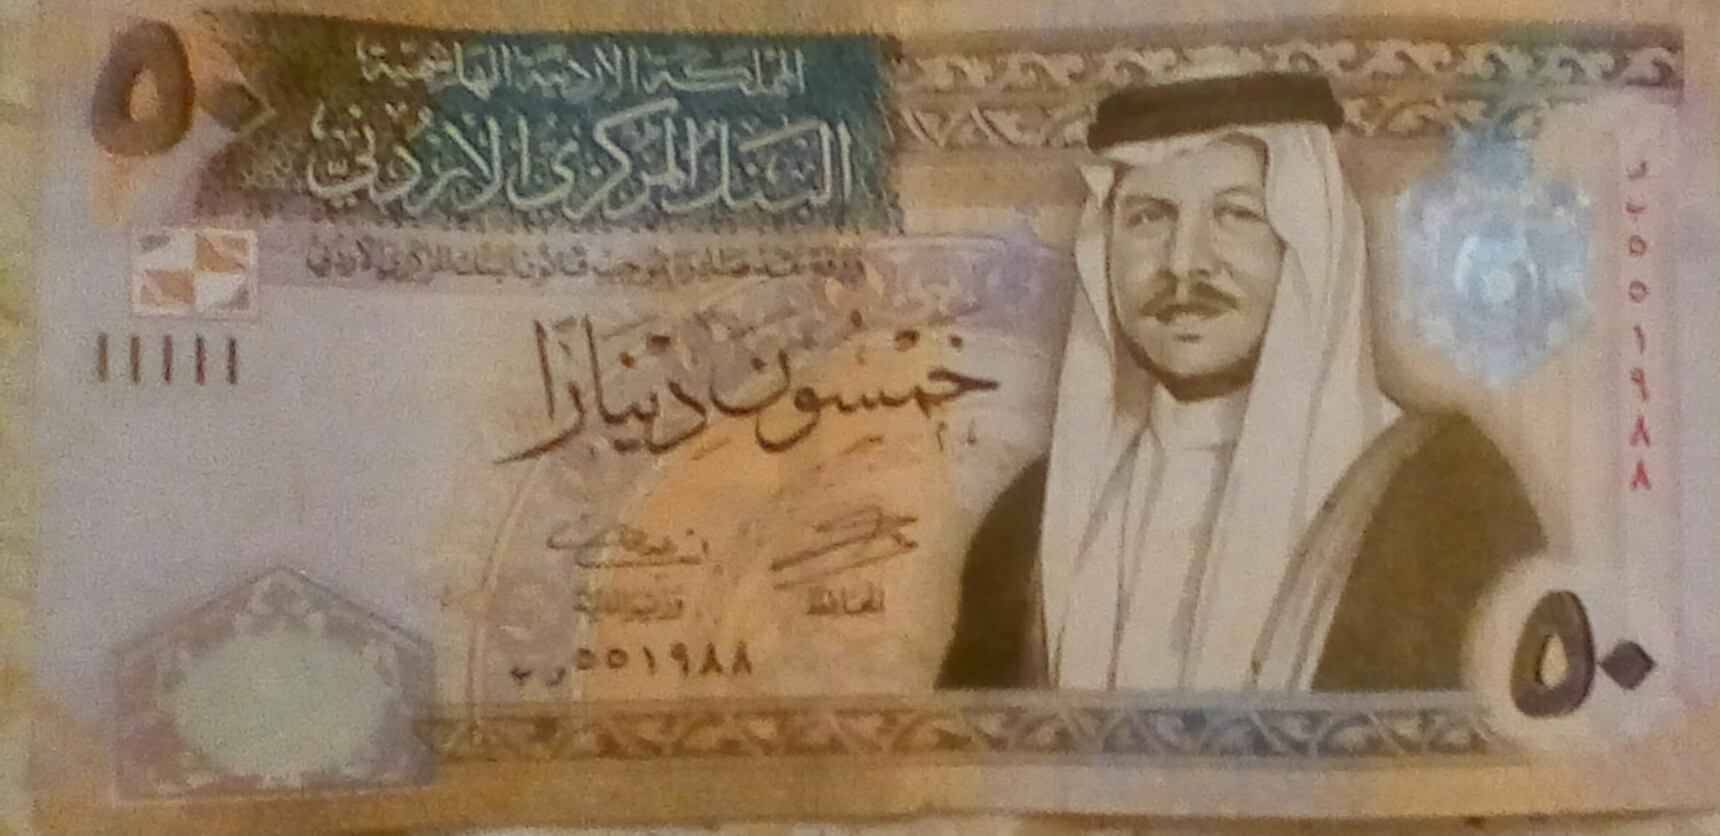 10 الاف دينار اردني كم سعودي